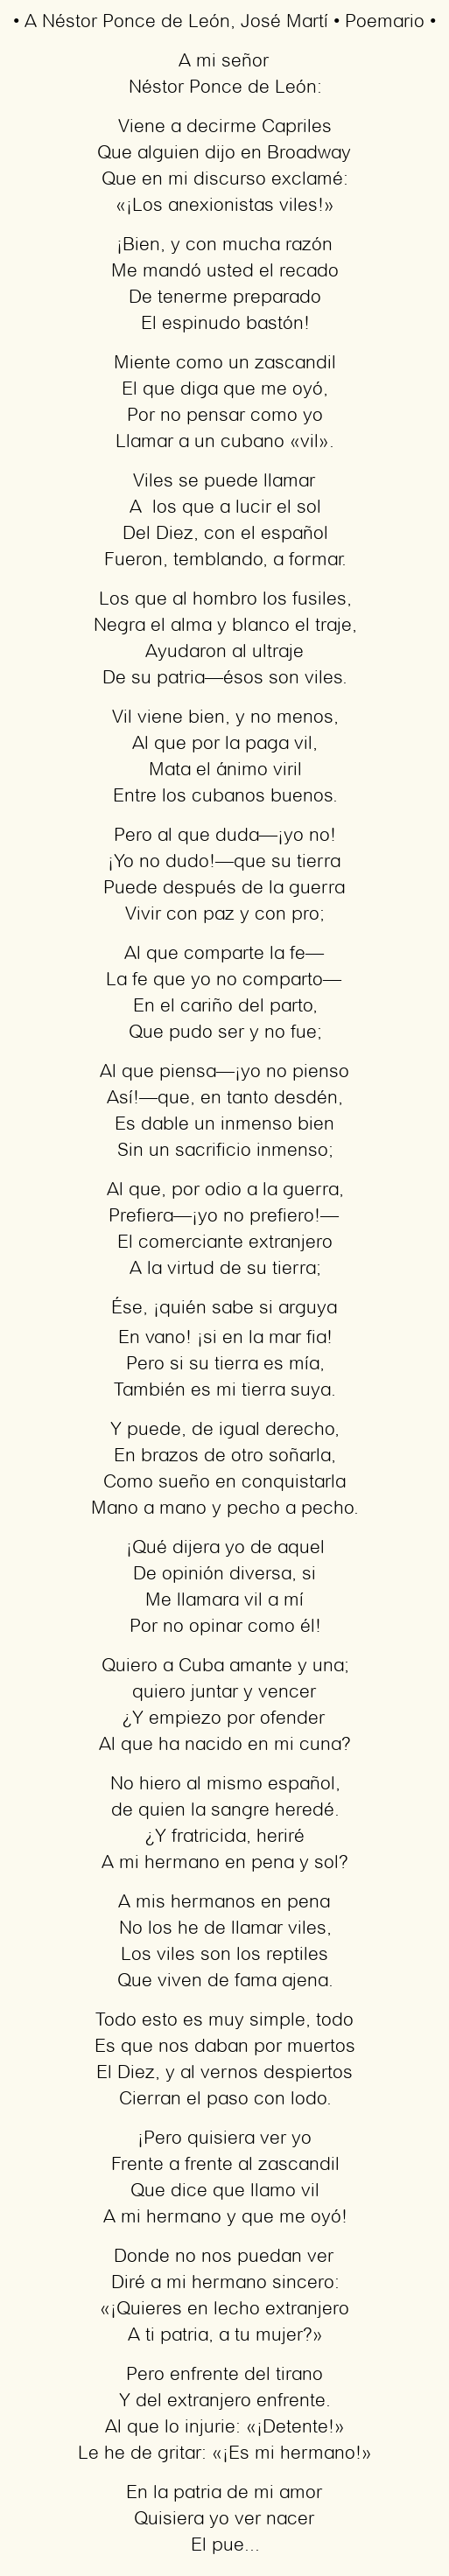 Imagen con el poema A Néstor Ponce de León, por José Martí